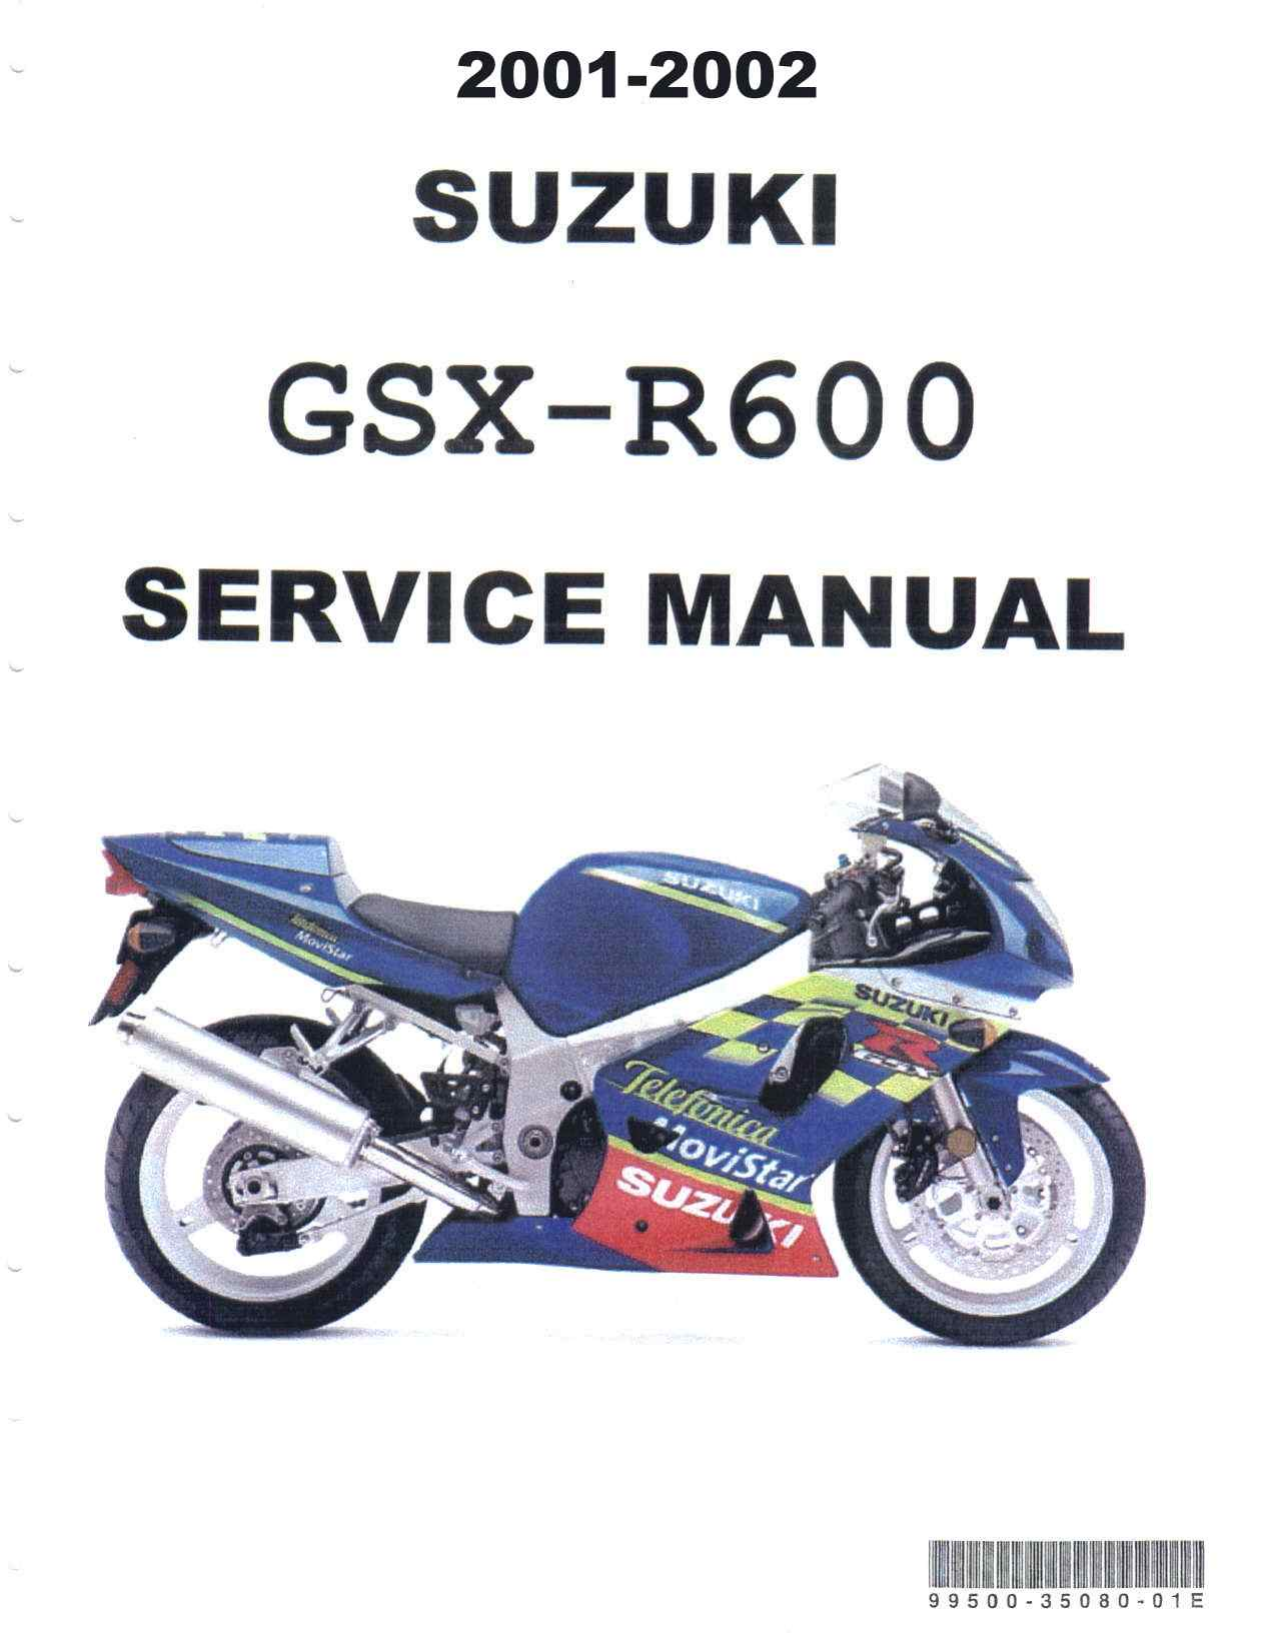 2001-2002 Suzuki GSX-R 600 service manual Preview image 1